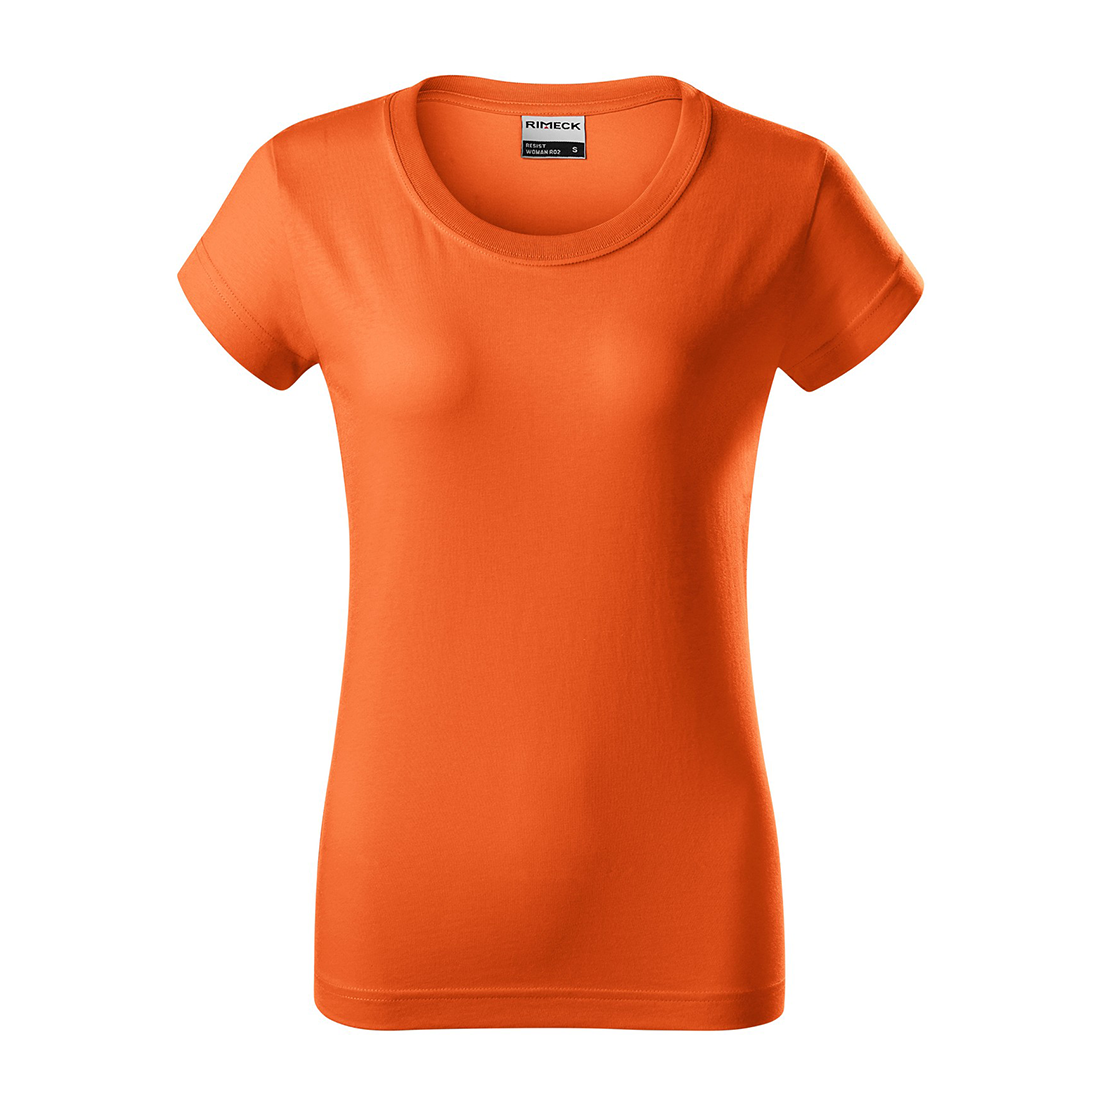 Damen-T-Shirt aus vorgewaschener Baumwolle - Arbeitskleidung